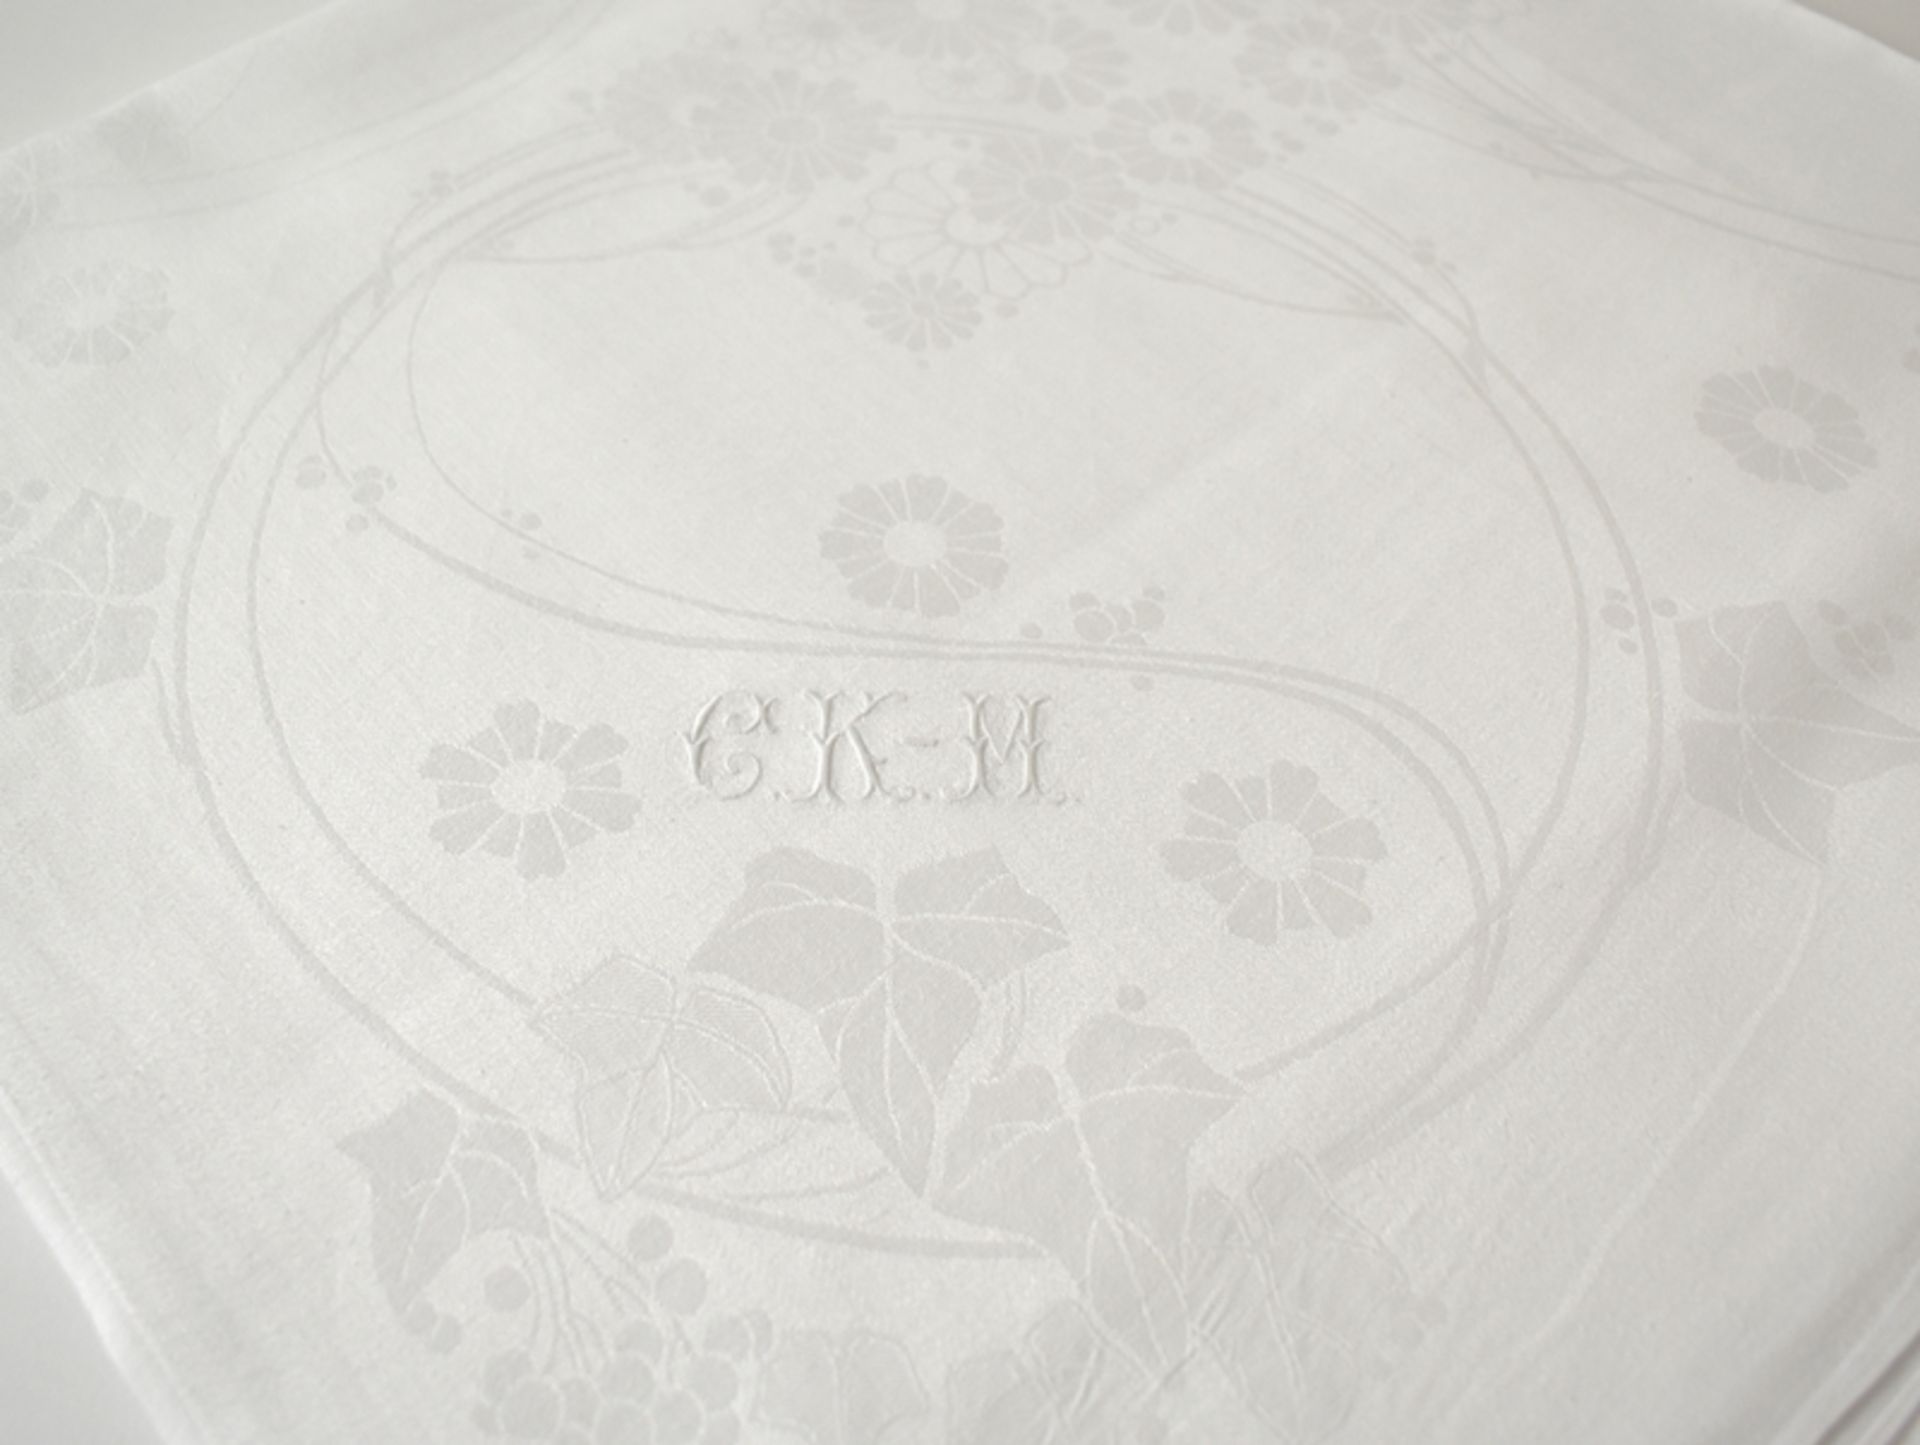 Feines Jugendstil-Tafeltuch mit stilisierten Blumen und Monogramm "CKM". Feiner weißer Seidenleinen